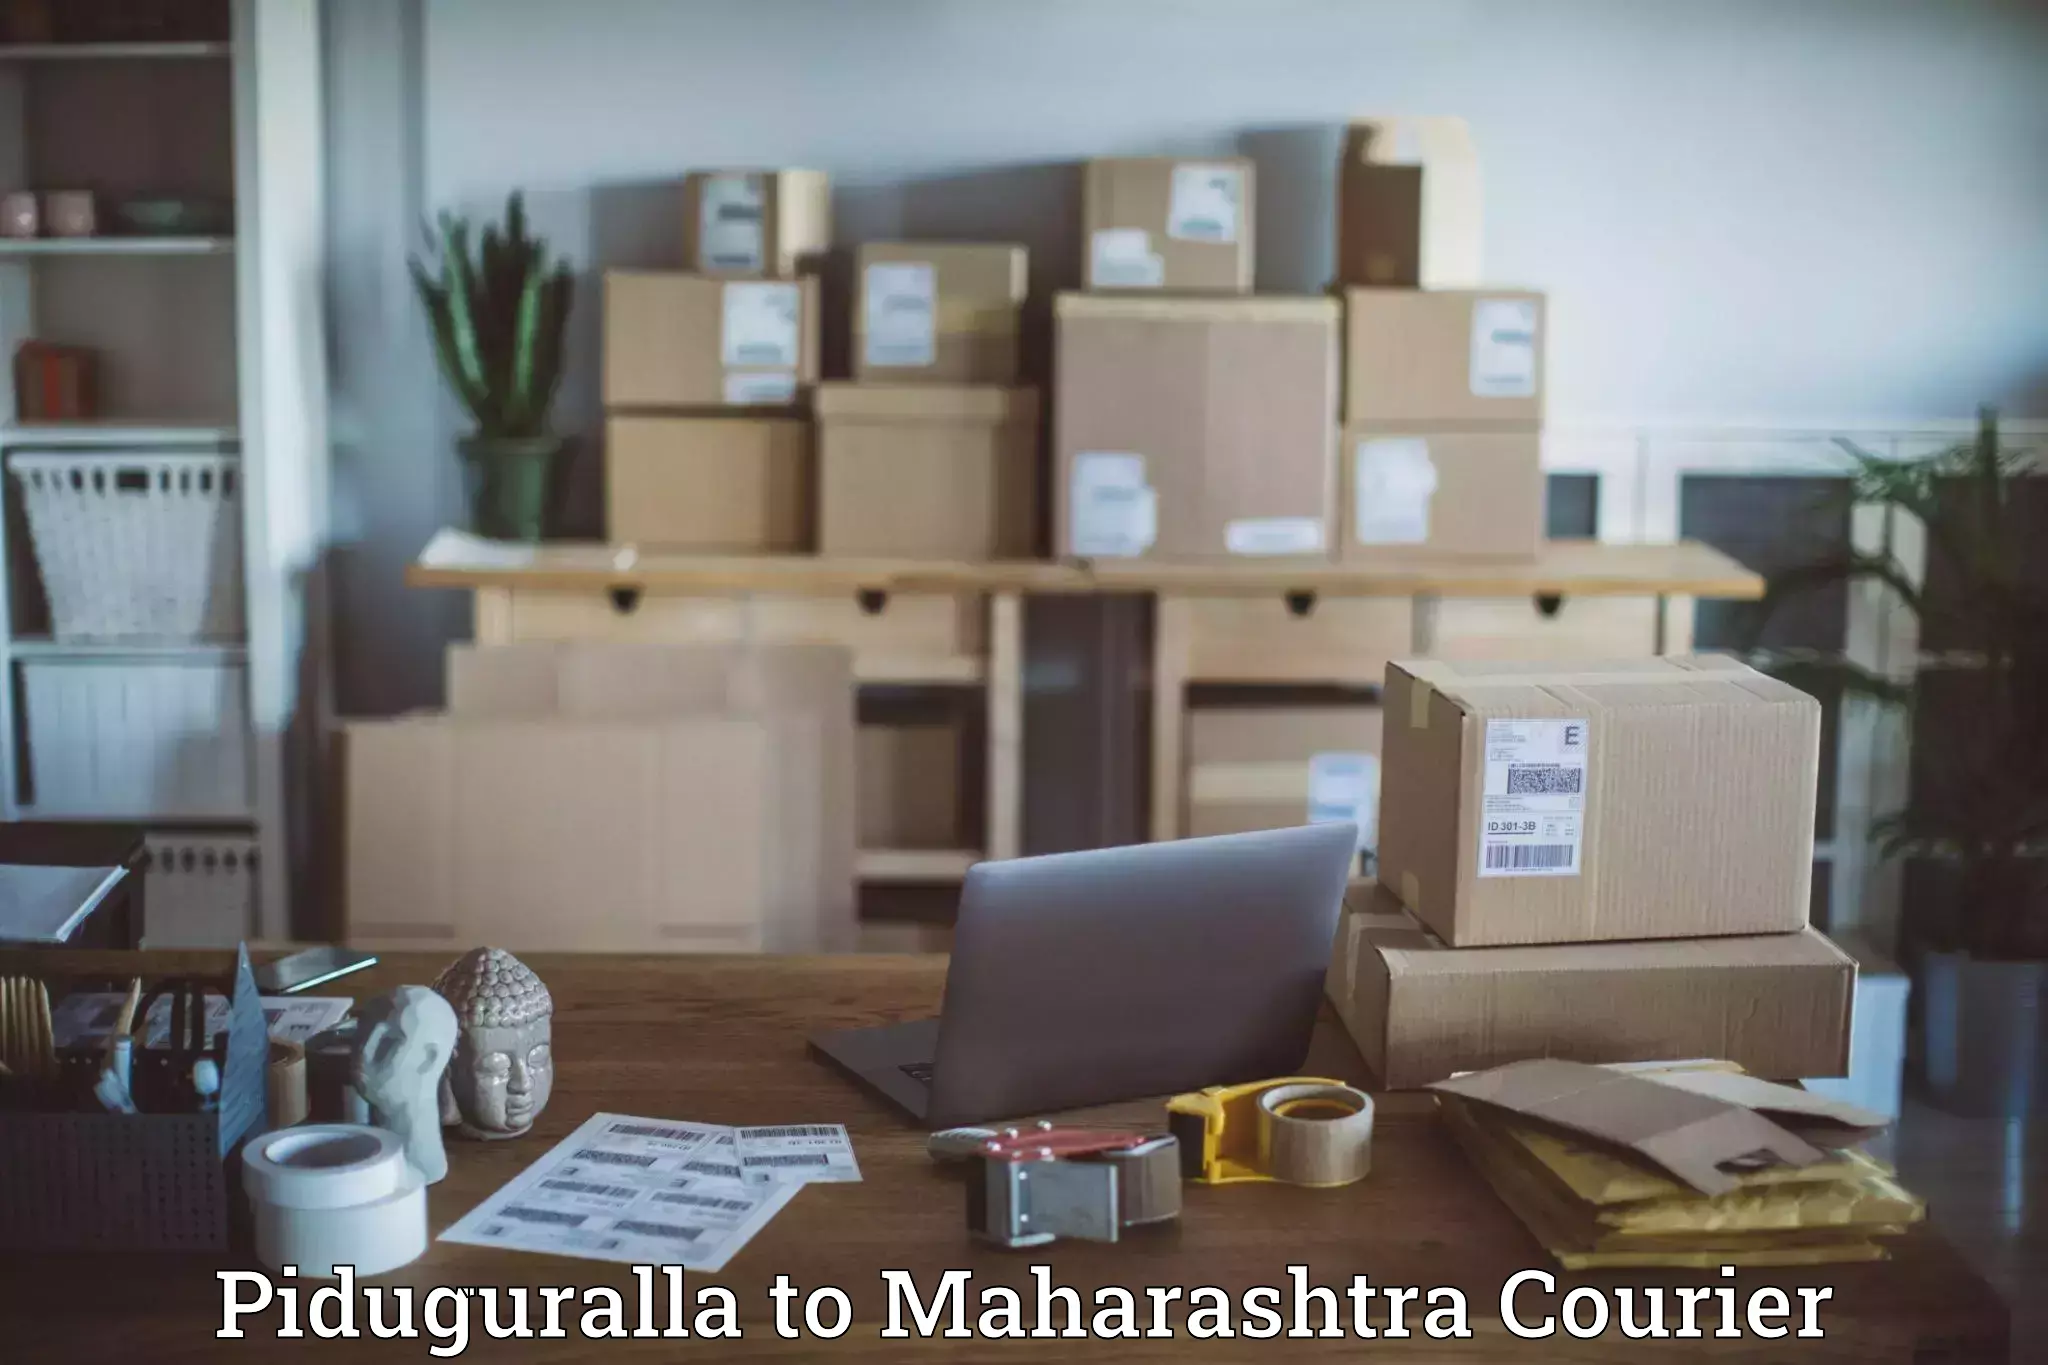 Reliable delivery network Piduguralla to Manjlegaon